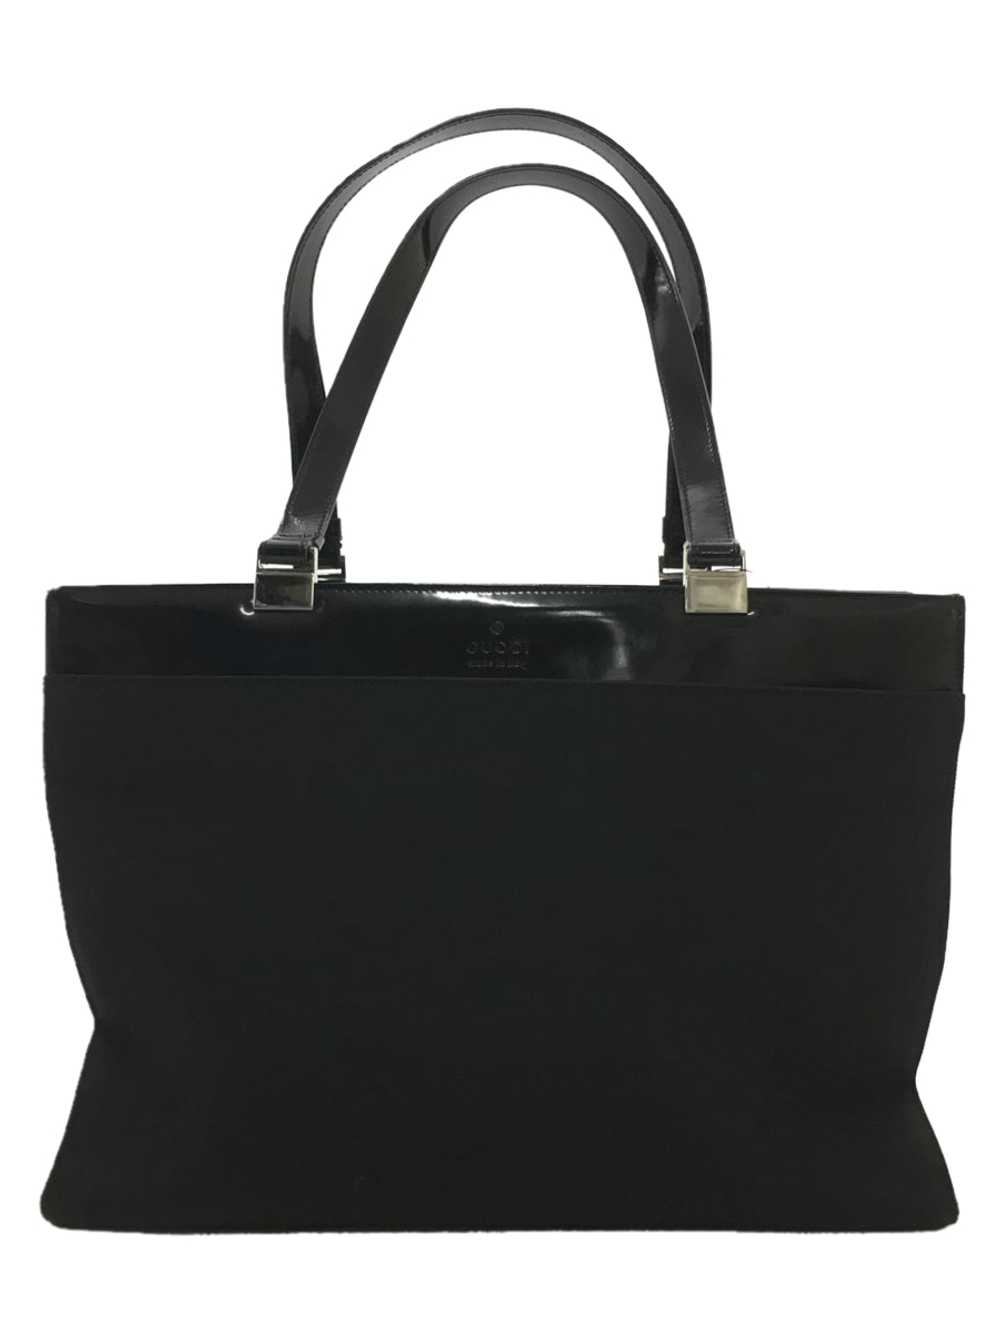 [Japan Used Bag] Used Gucci Tote Bag/Nylon/Blk Bag - image 1